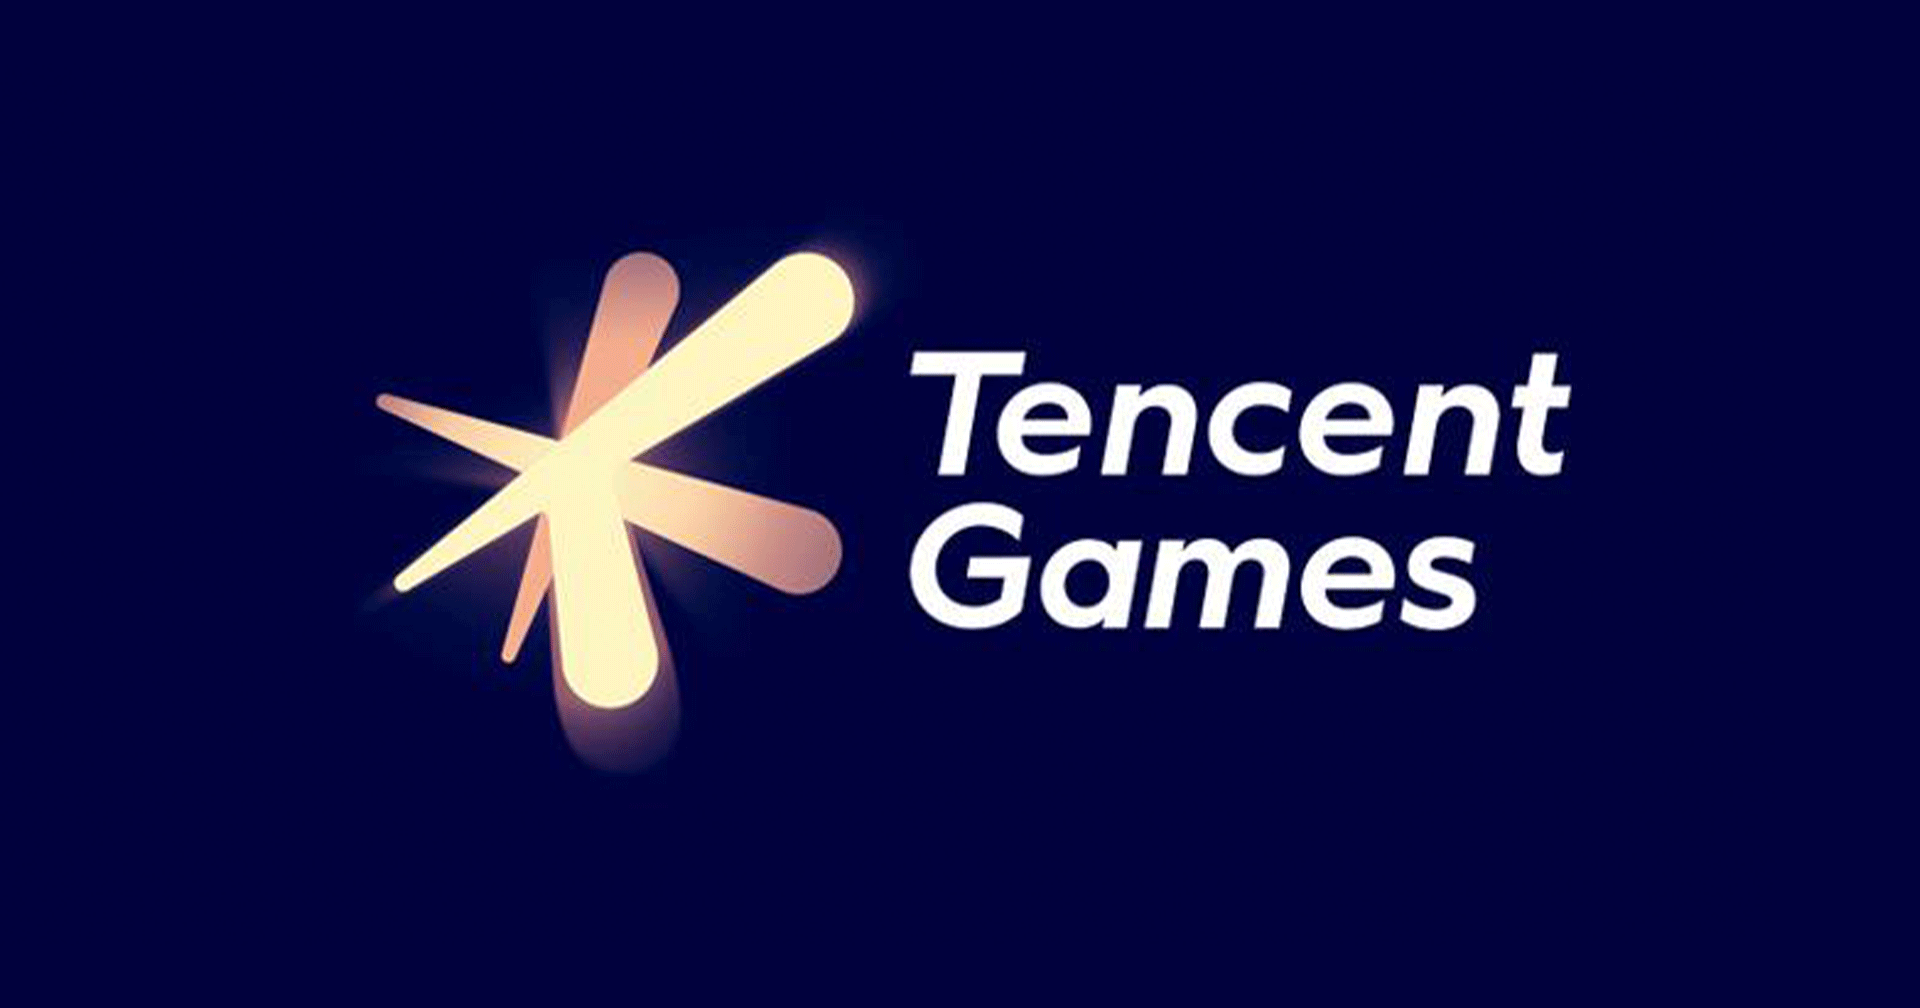 Tencent เตรียมพัฒนาระบบมอบทรัพย์สินดิจิทัลเป็นมรดกหลังเสียชีวิต